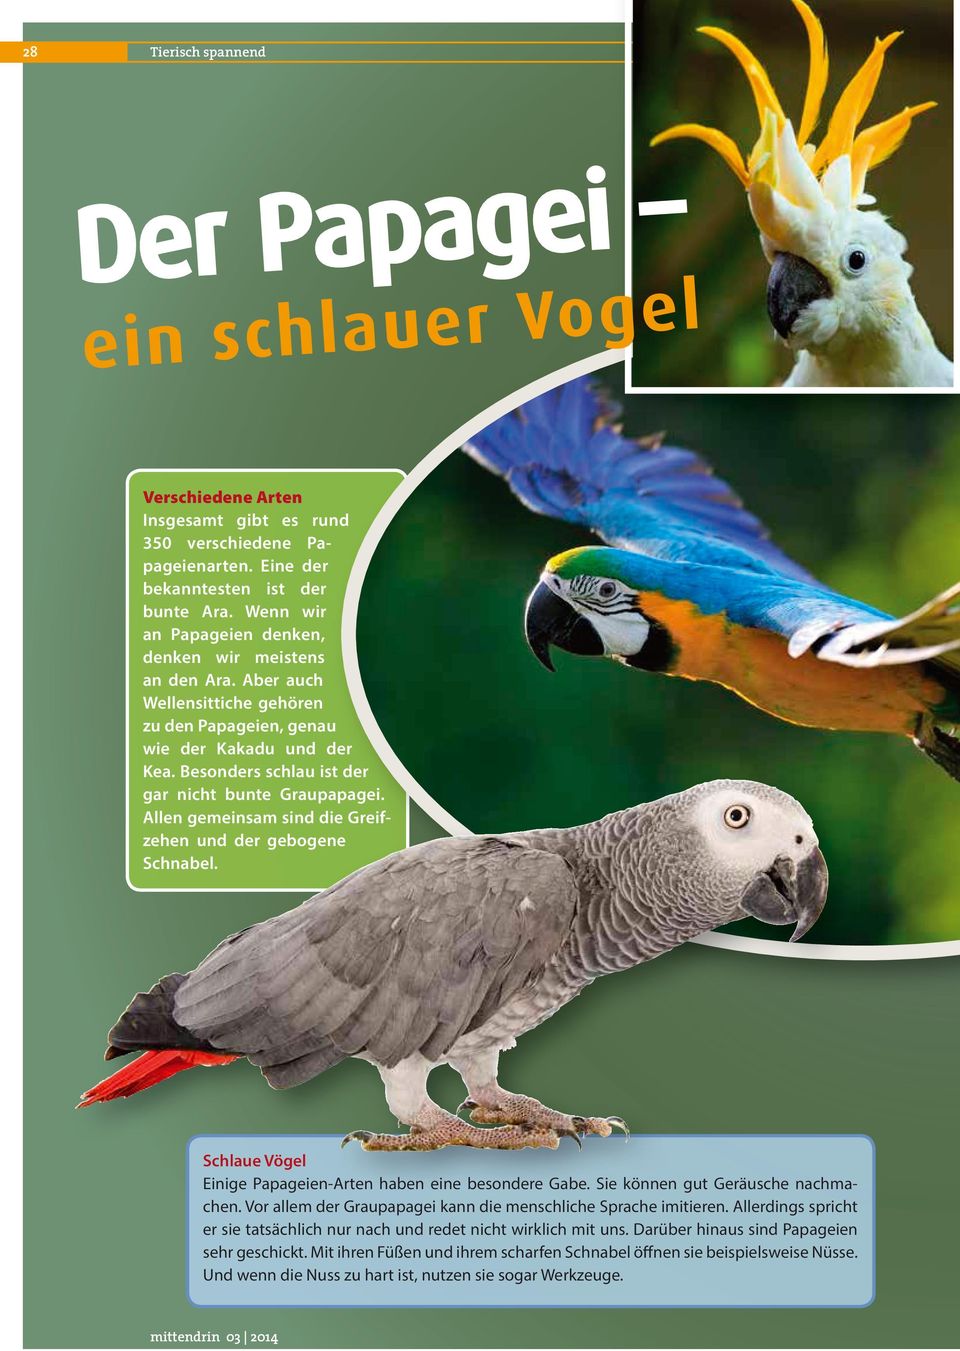 Allen gemeinsam sind die Greifzehen und der gebogene Schnabel. Schlaue Vögel Einige Papageien-Arten haben eine besondere Gabe. Sie können gut Geräusche nachmachen.